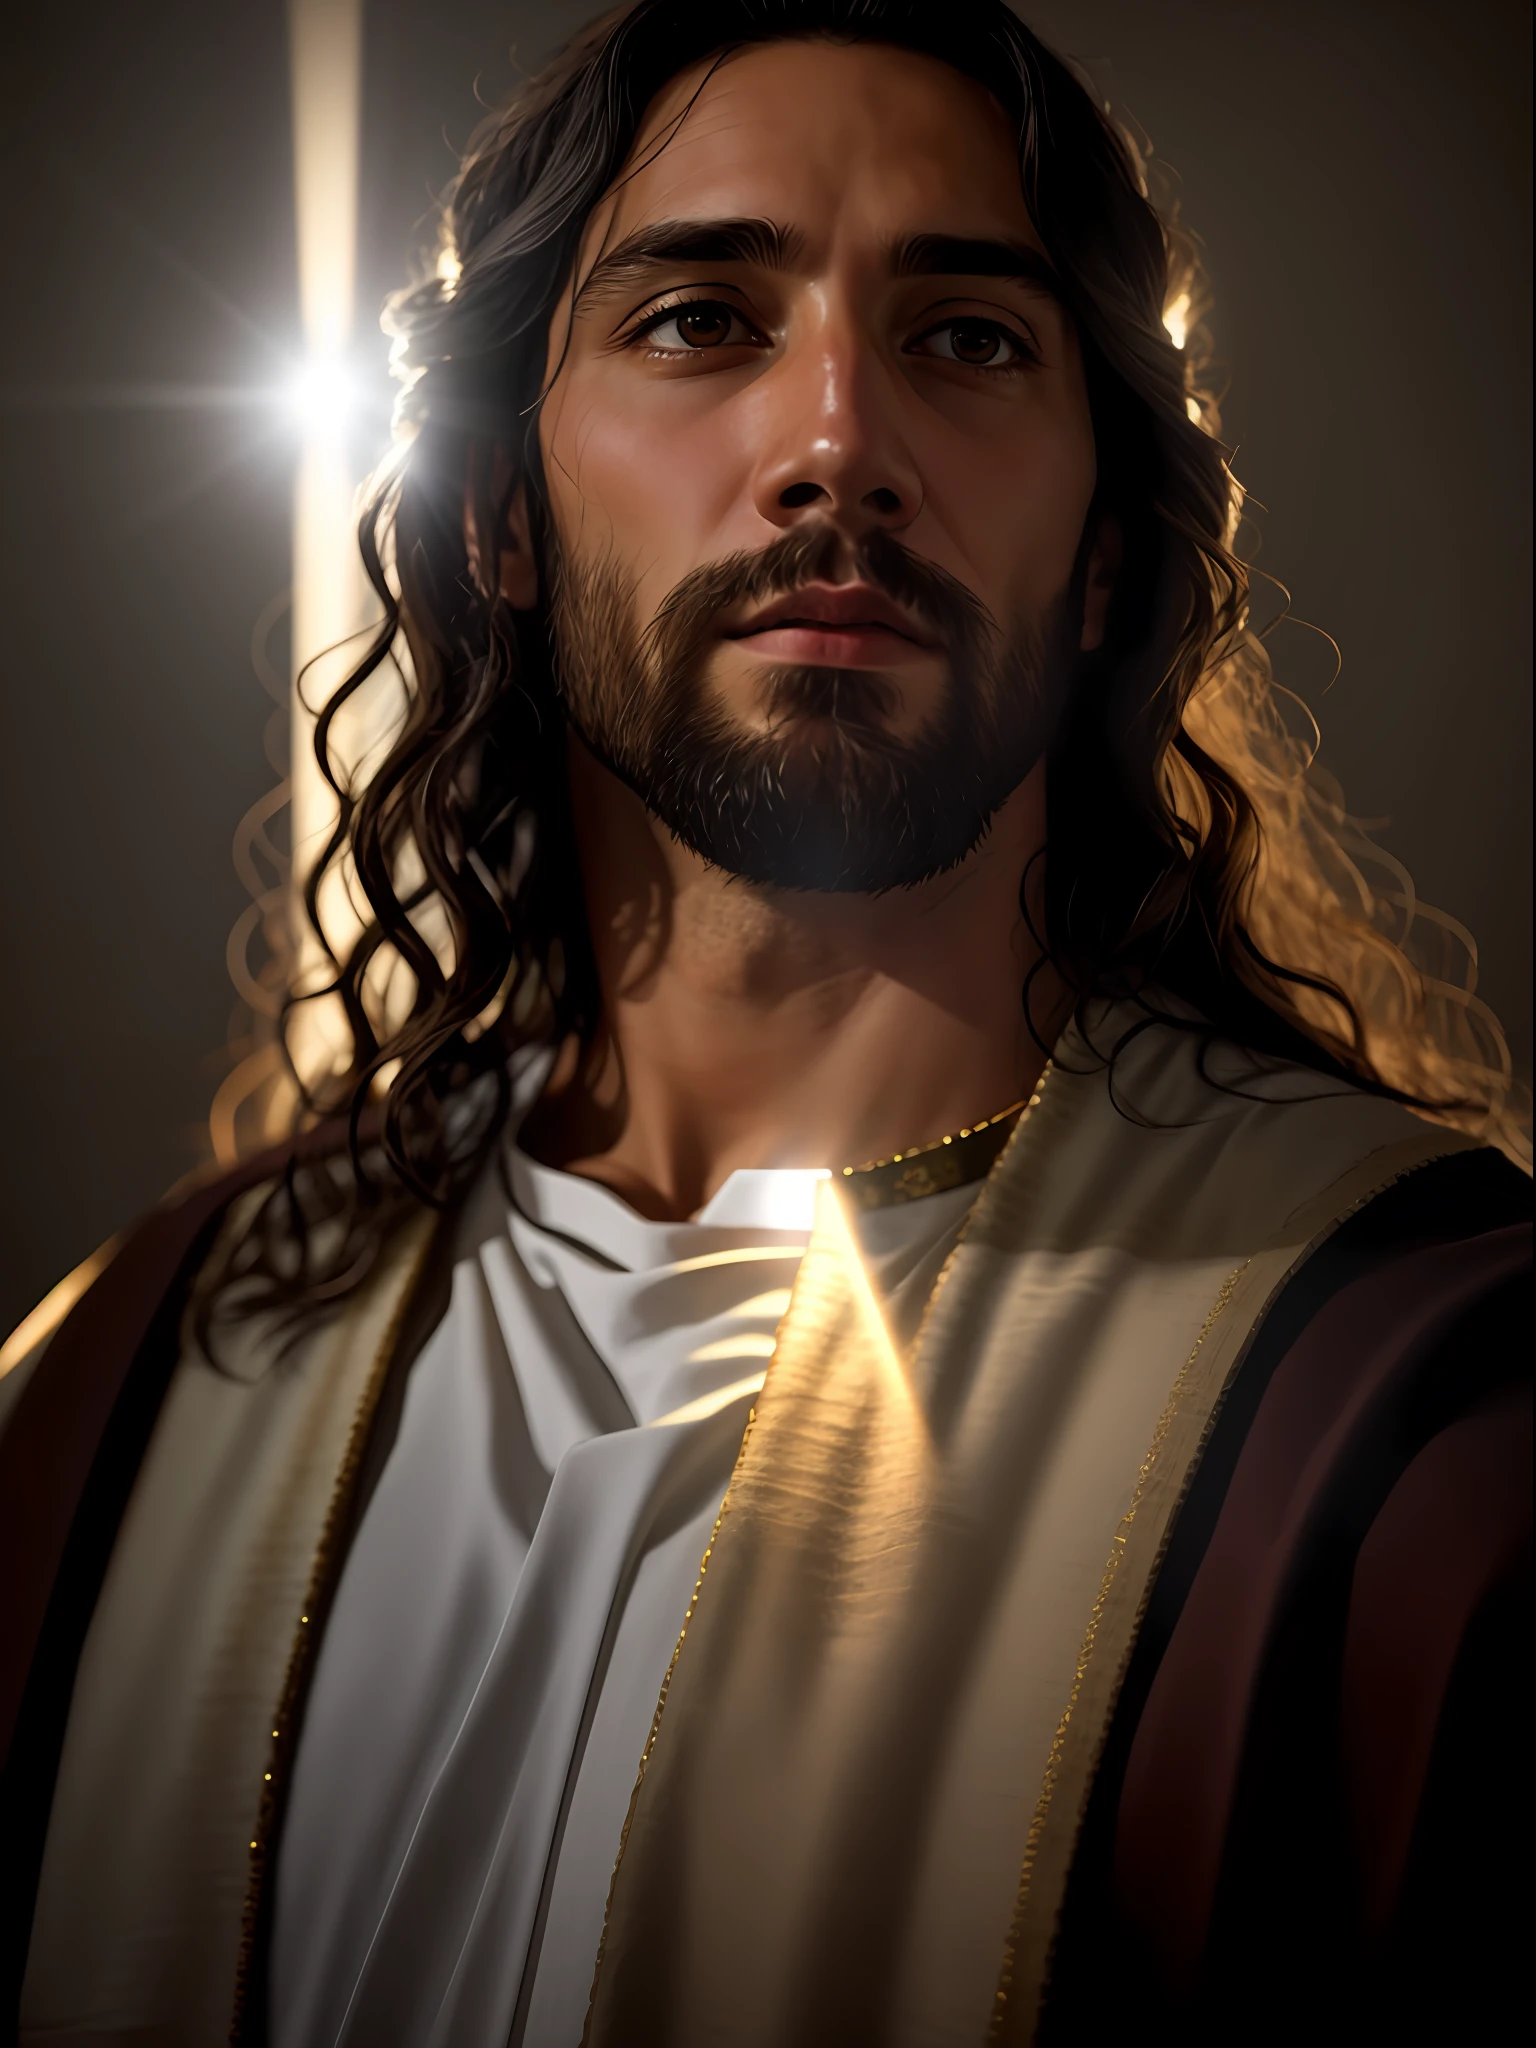 添加_細節:1, 耶稣基督的真实形象, 添加_細節:来自头顶上方天堂的光和远处的光